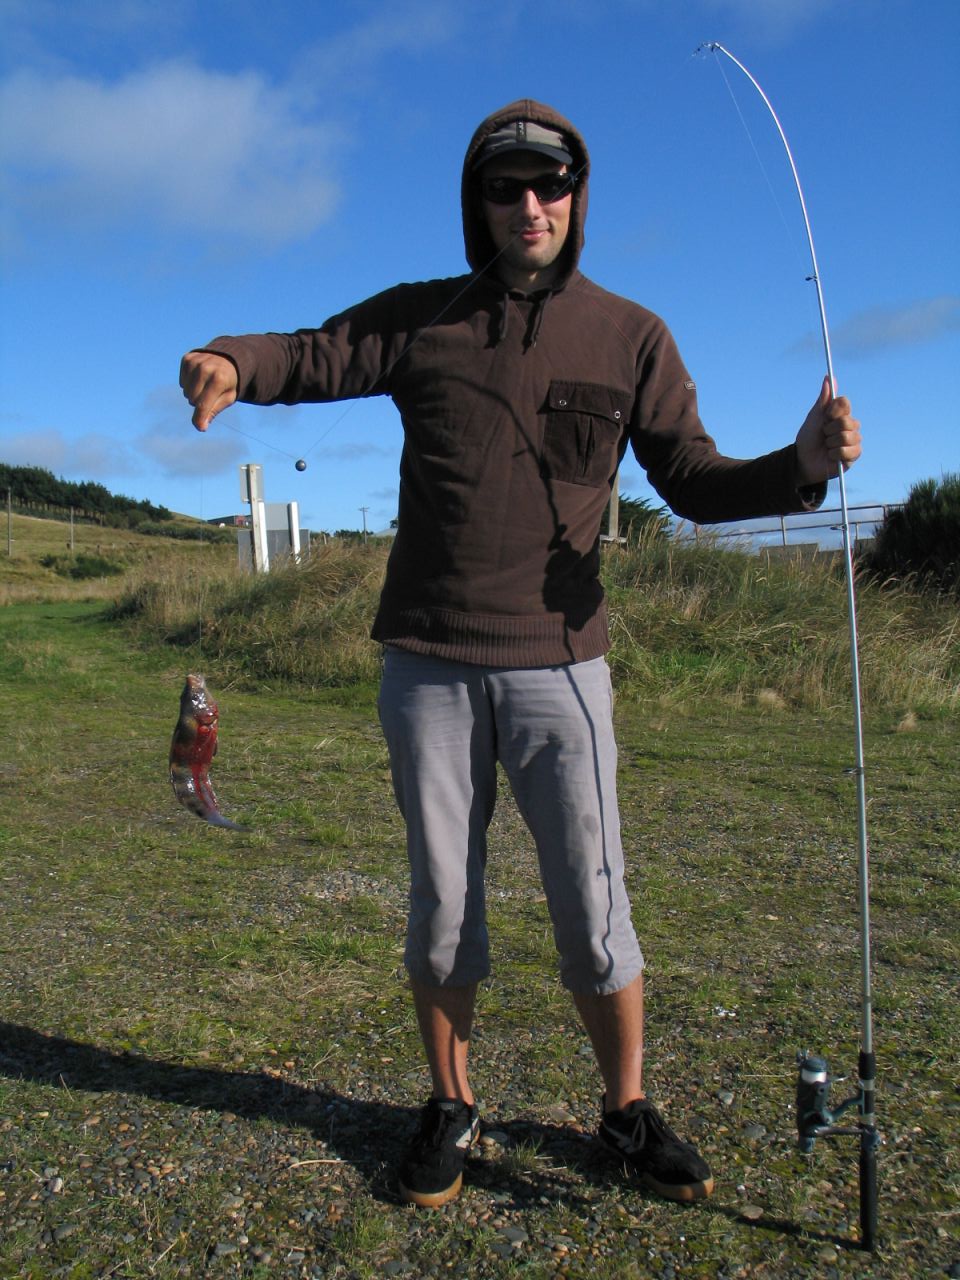 fotka / image Colac Bay - chytil jsem opravdove Monstrum!, New Zealand